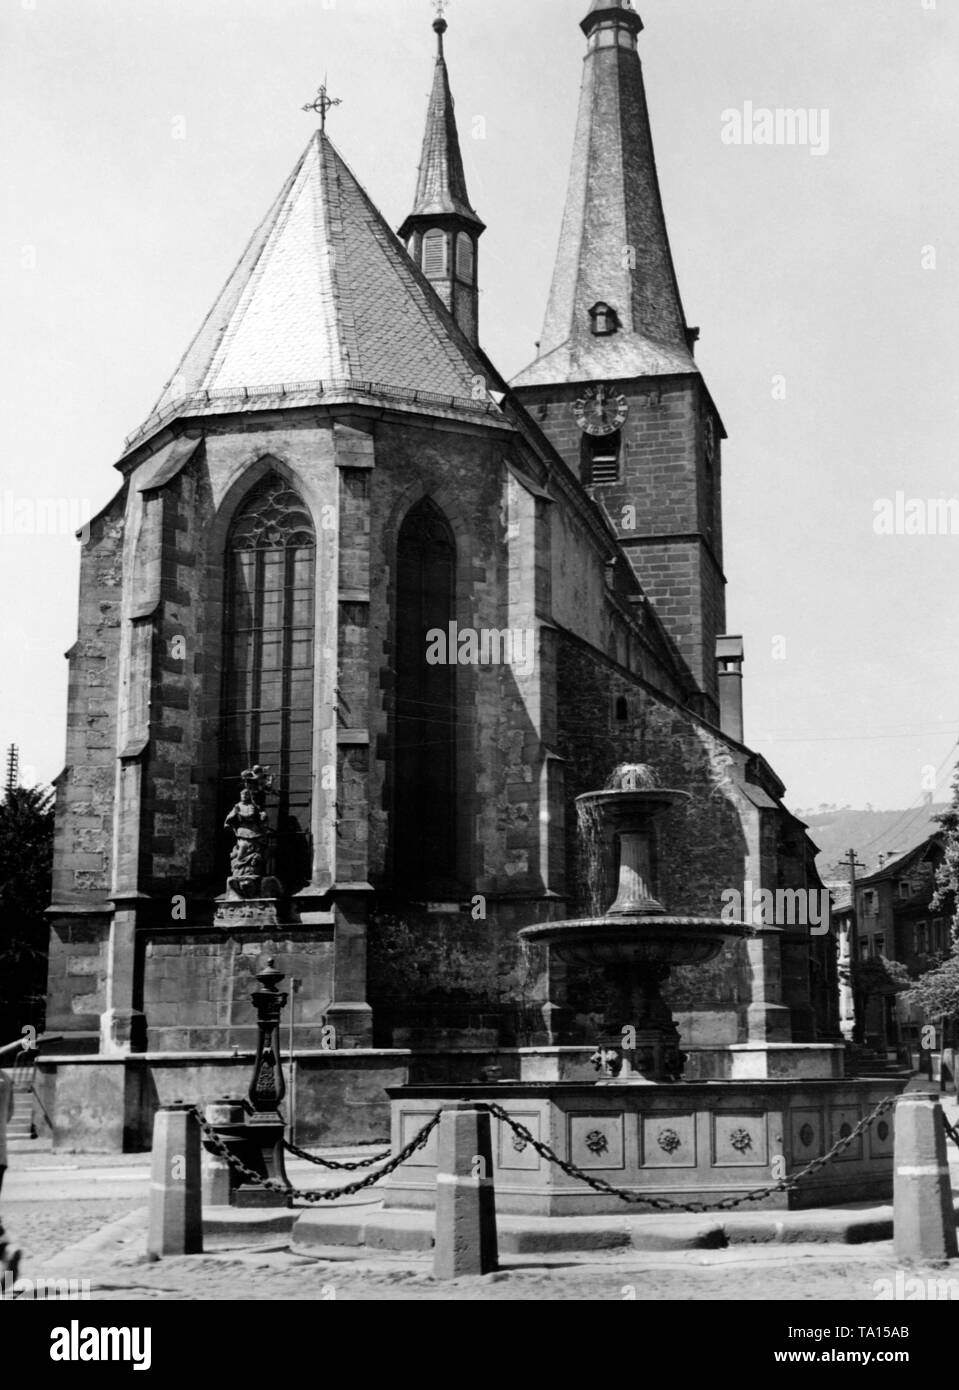 Die spätgotische Katholische Pfarrkirche St. Ulrich gebaut von 1444 bis 1473 als dreischiffige Spalte Basilika mit einem 70 m hohen Turm in der kleinen Stadt Deidesheim in Rheinland-Pfalz. Stockfoto